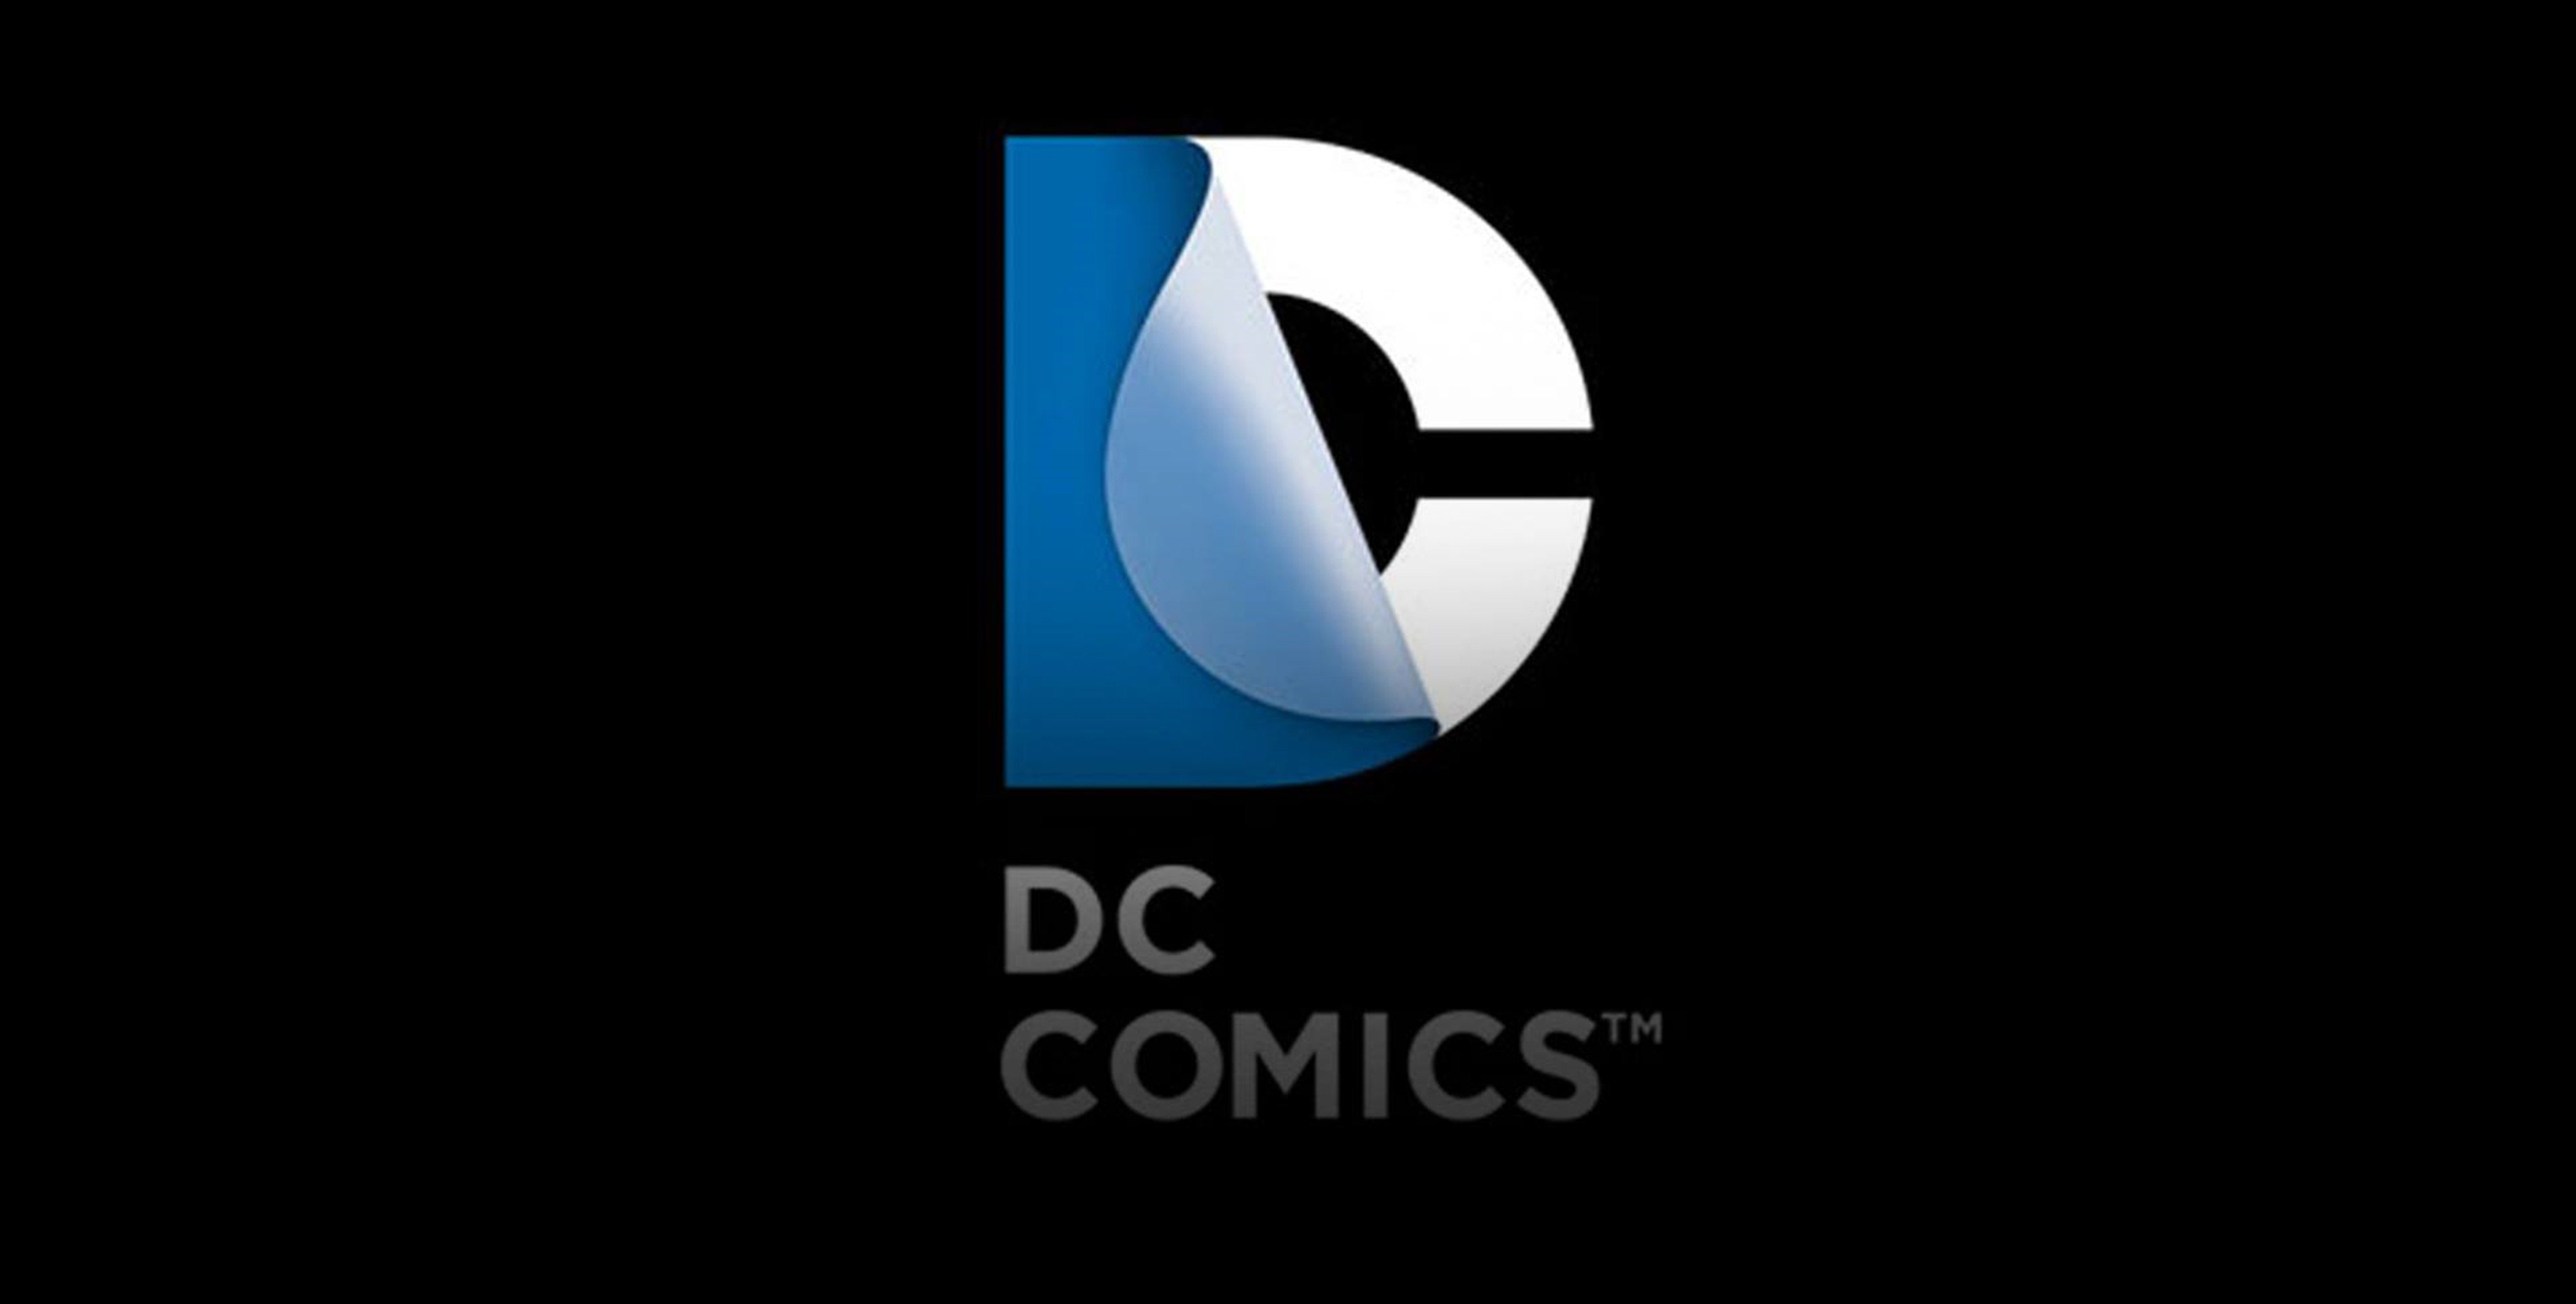 Dc comics logo superheroes comics wallpaper 4000x2025 345395 4000x2025